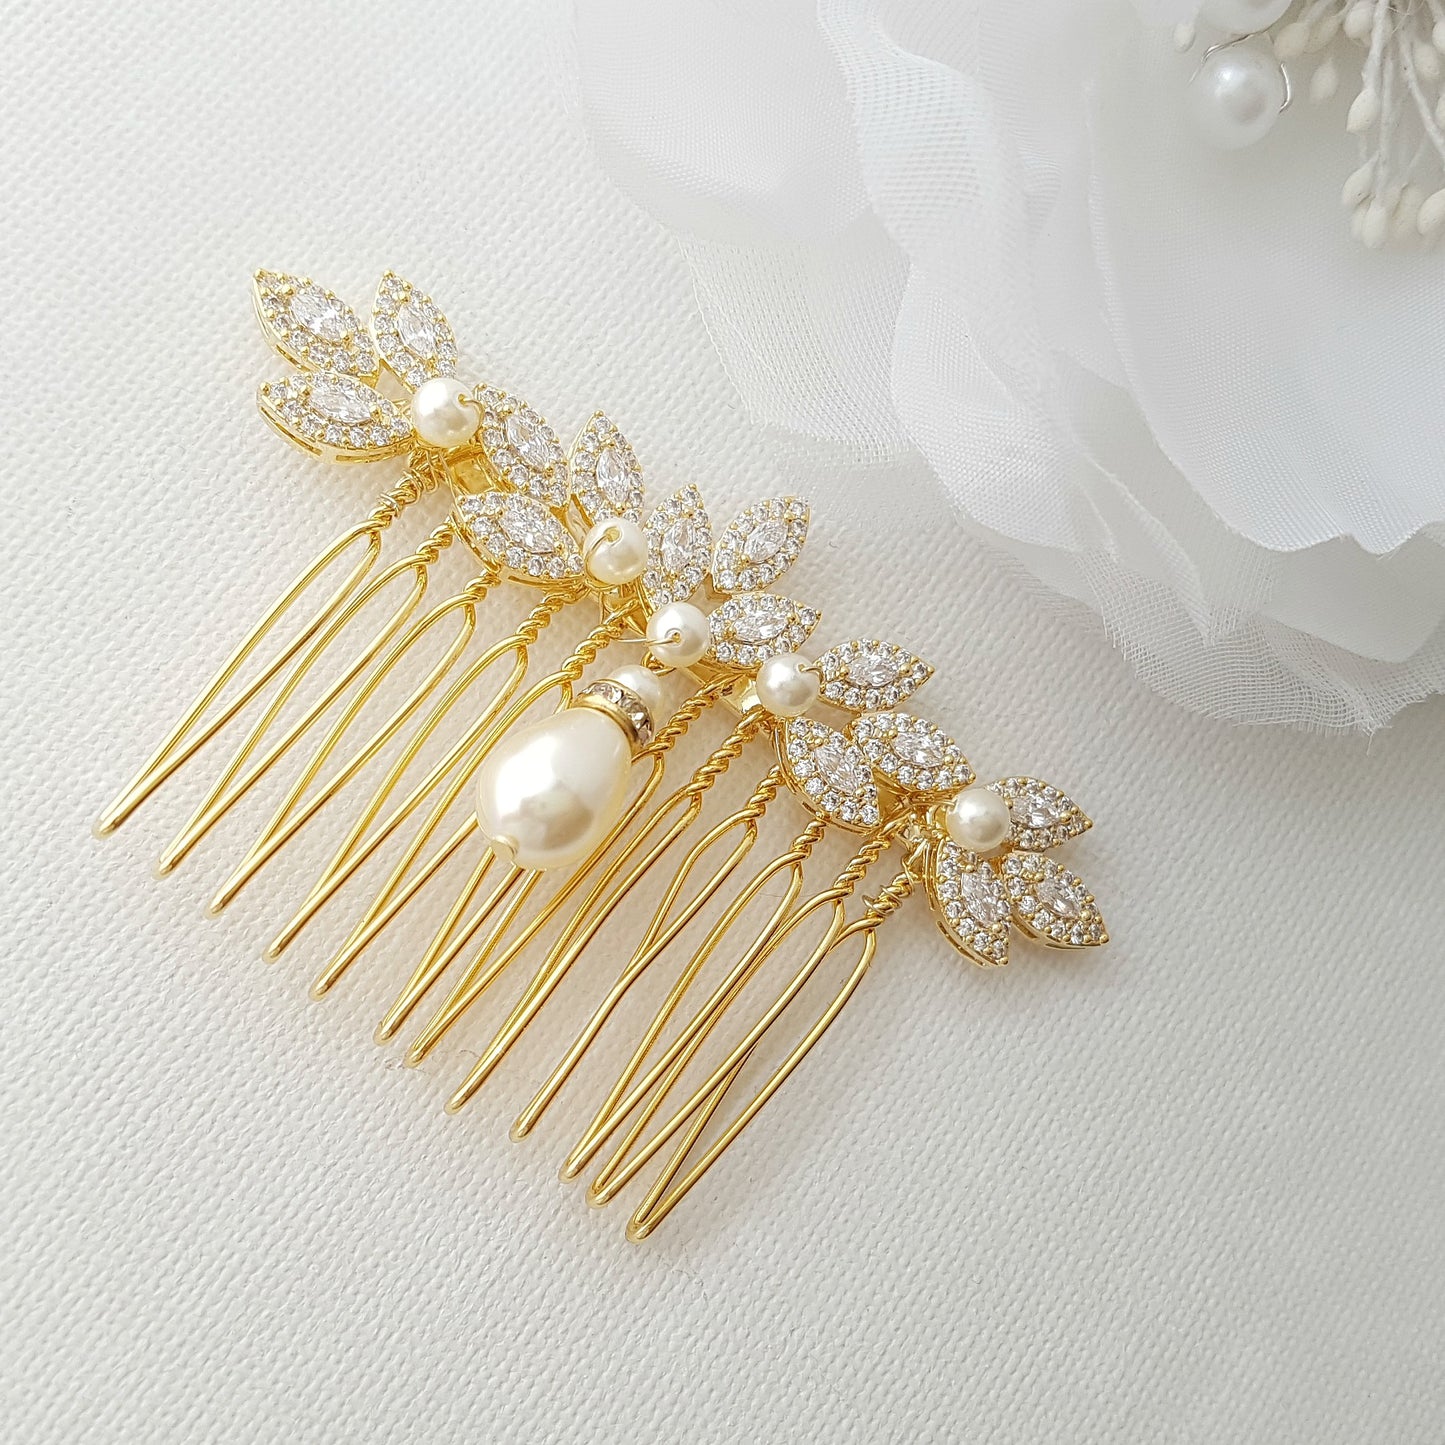 Peigne à cheveux doré pour les mariages avec perles et cristaux-Abby